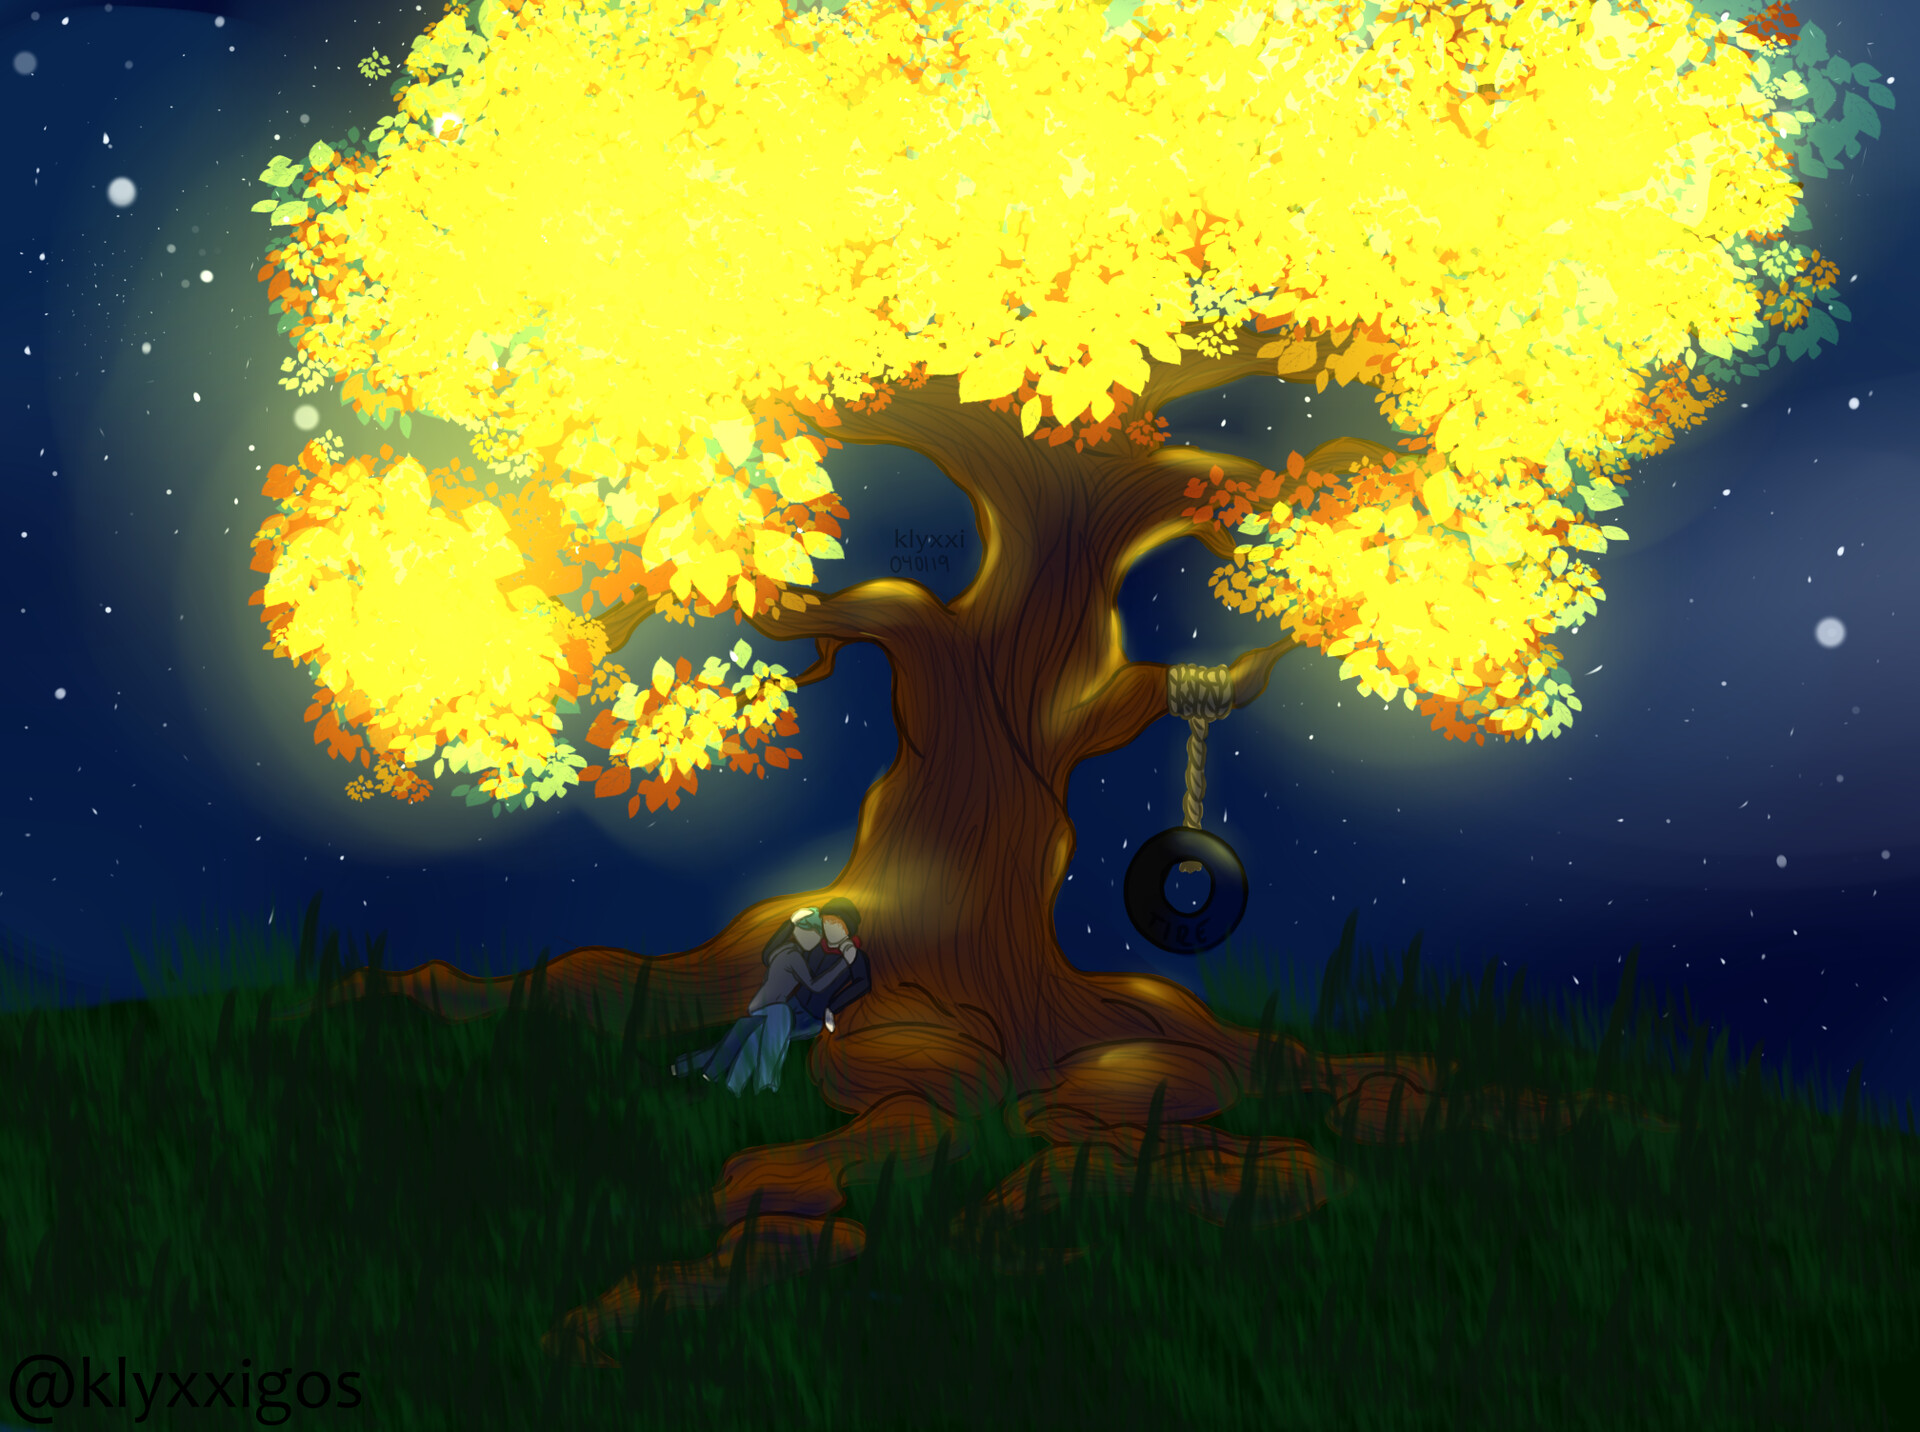 klyxxigos - Glowing Tree